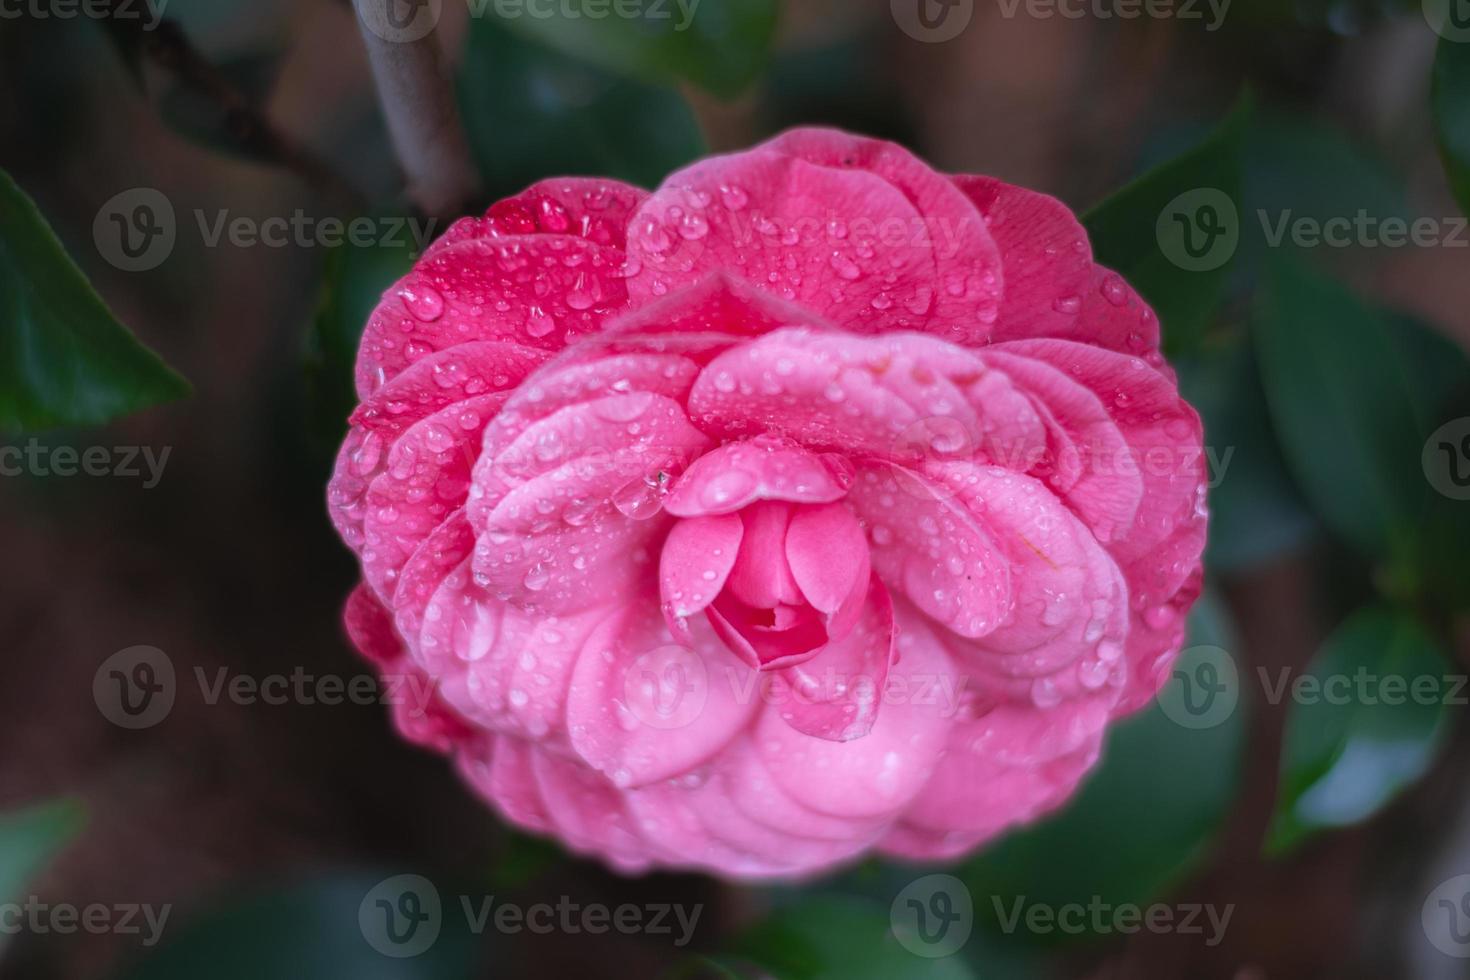 une seule fleur rose du camélia 'early wonder', ses pétales doubles couverts de gouttes d'eau. photo